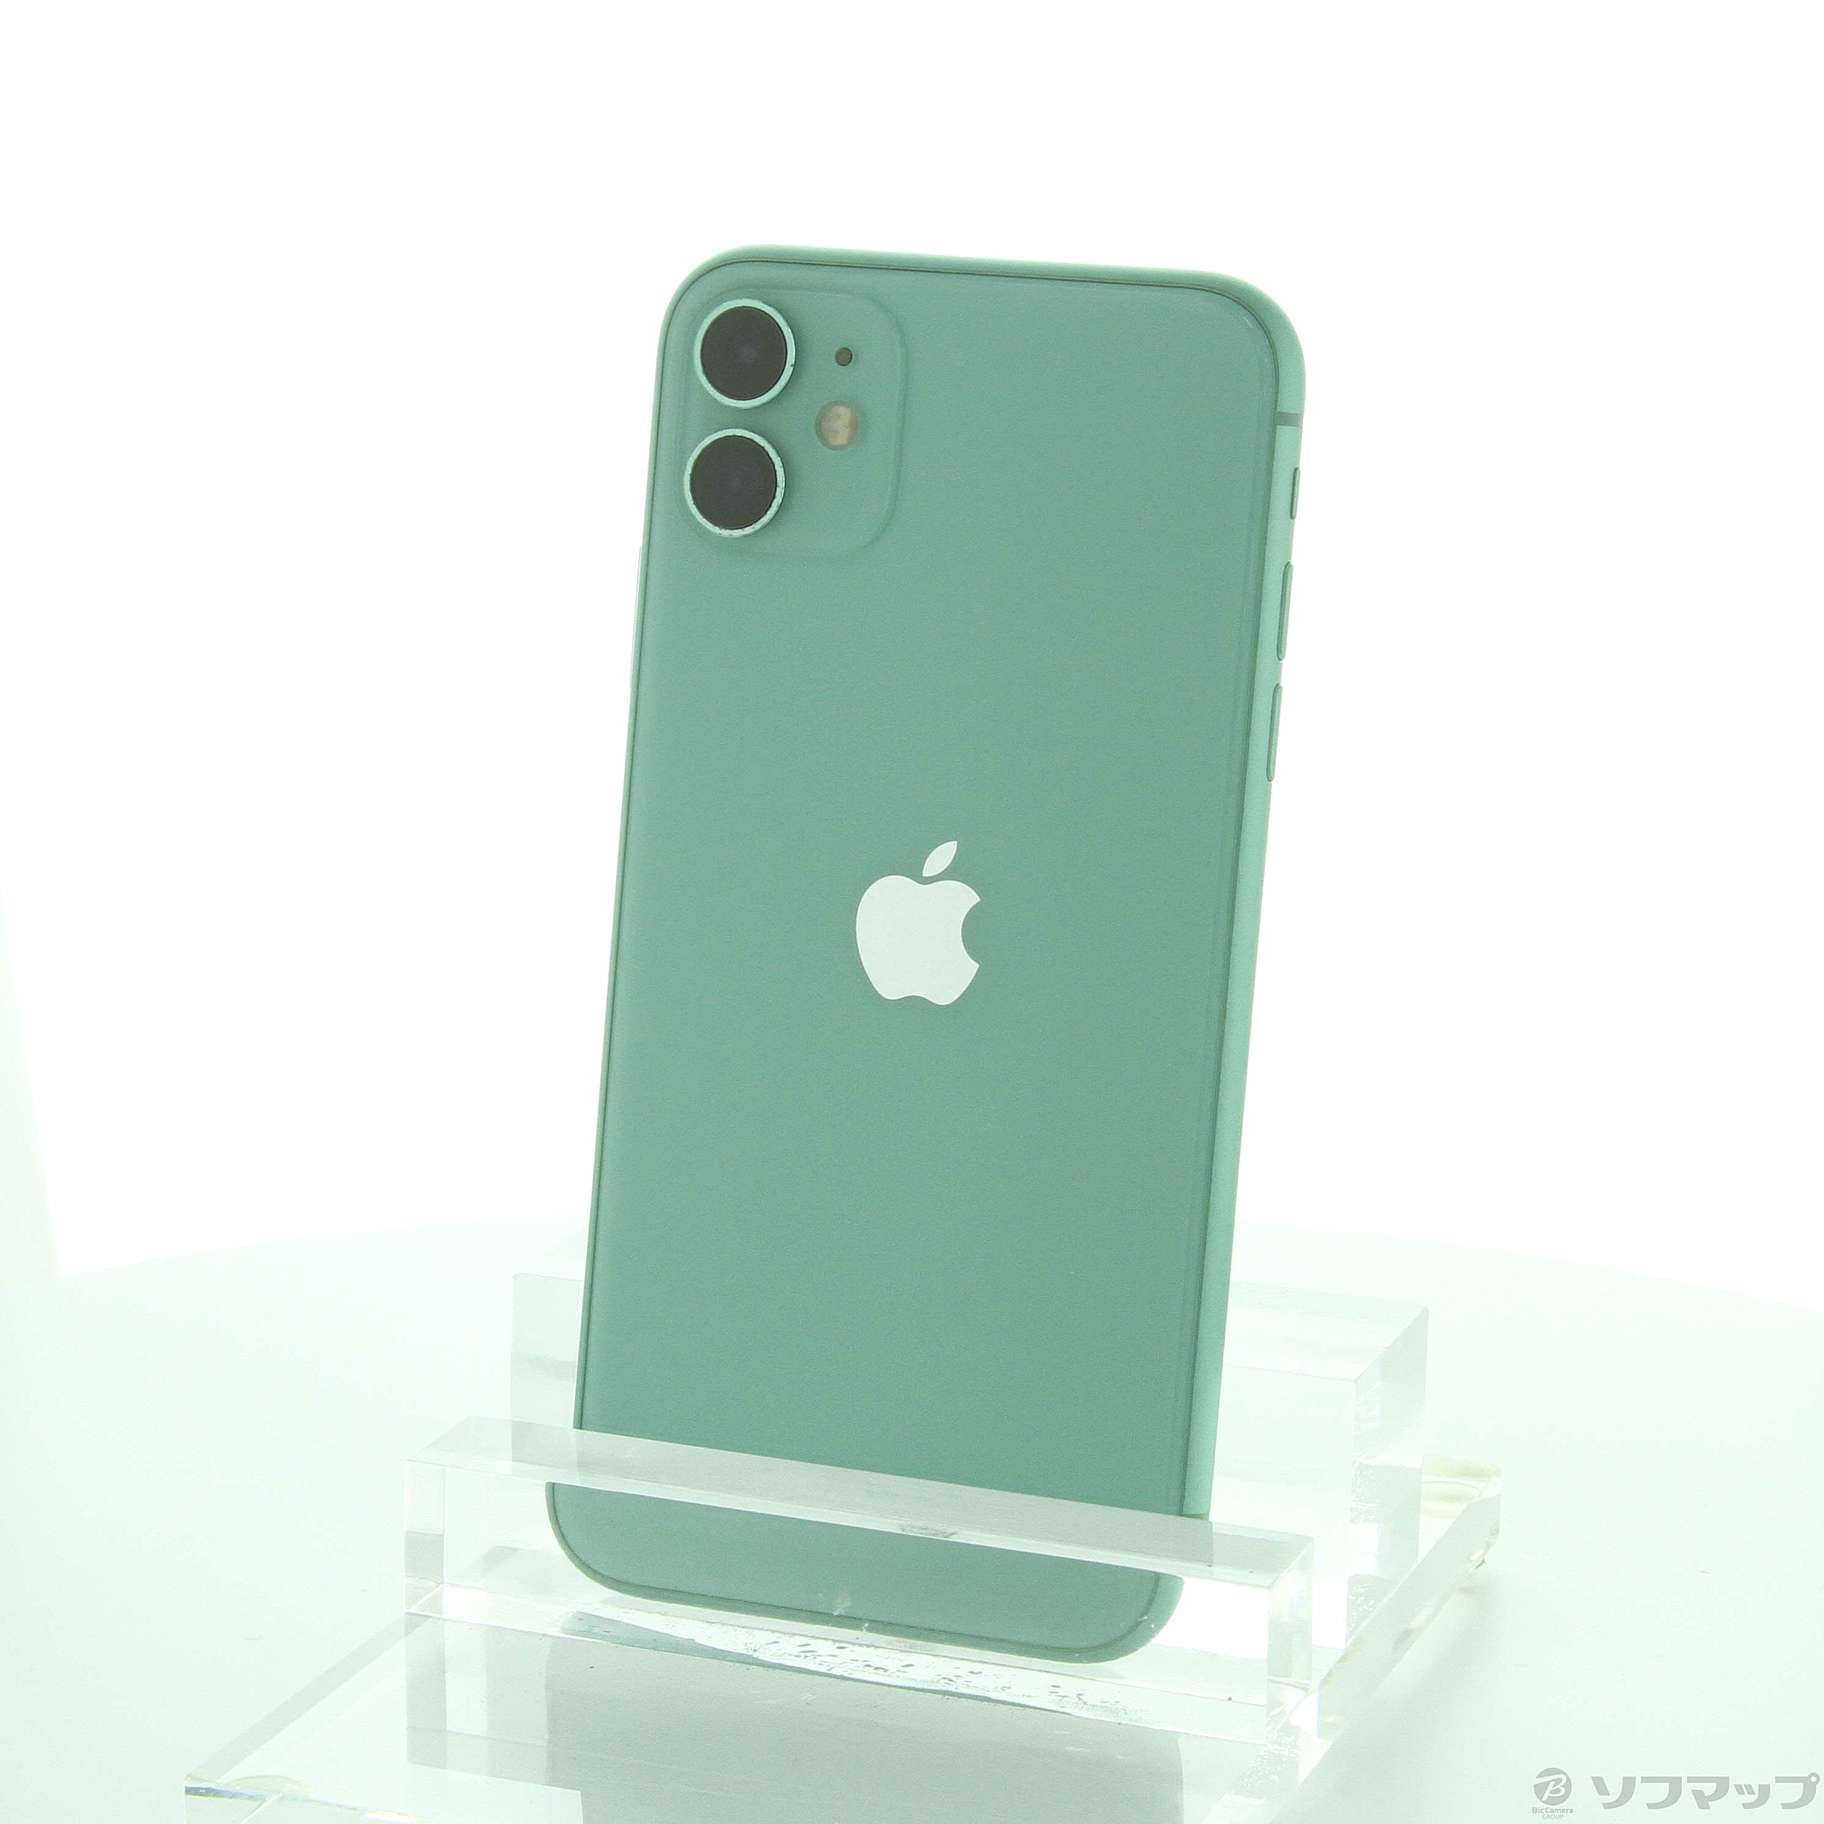 【売り物】MHDG3J/A iPhone 11 64GB グリーン SIMフリー iPhone